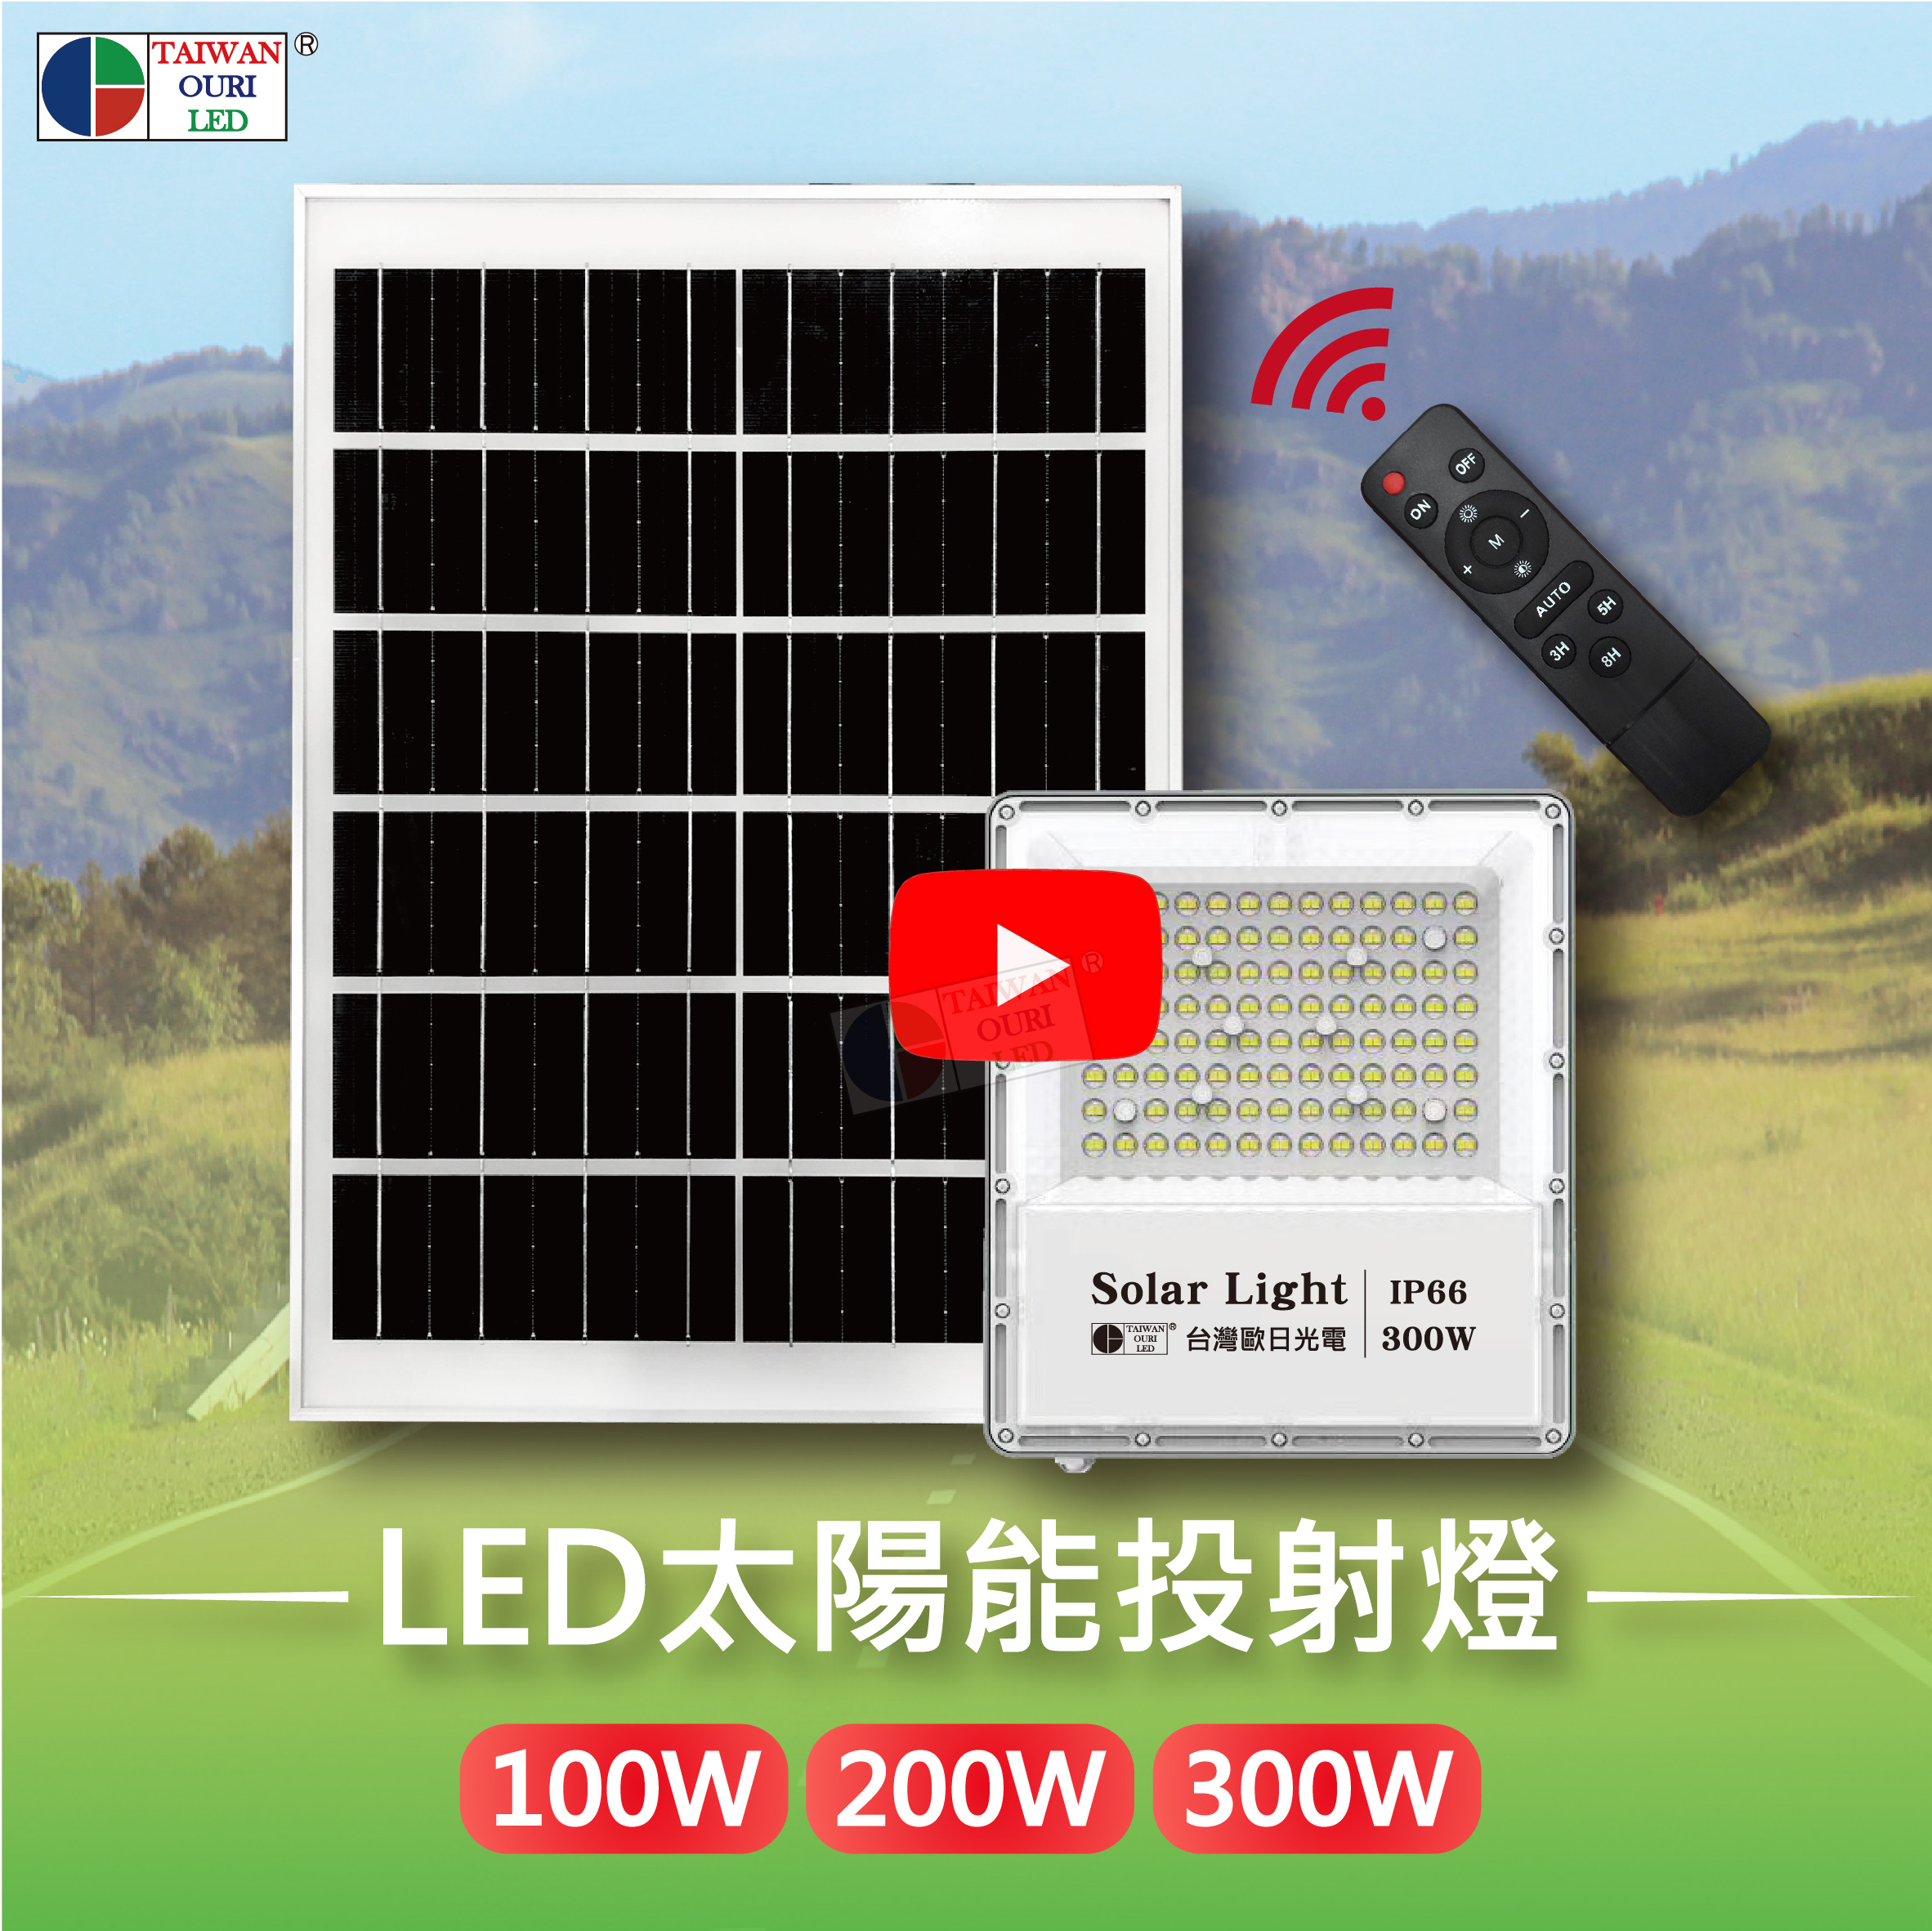 LED太陽能投射燈